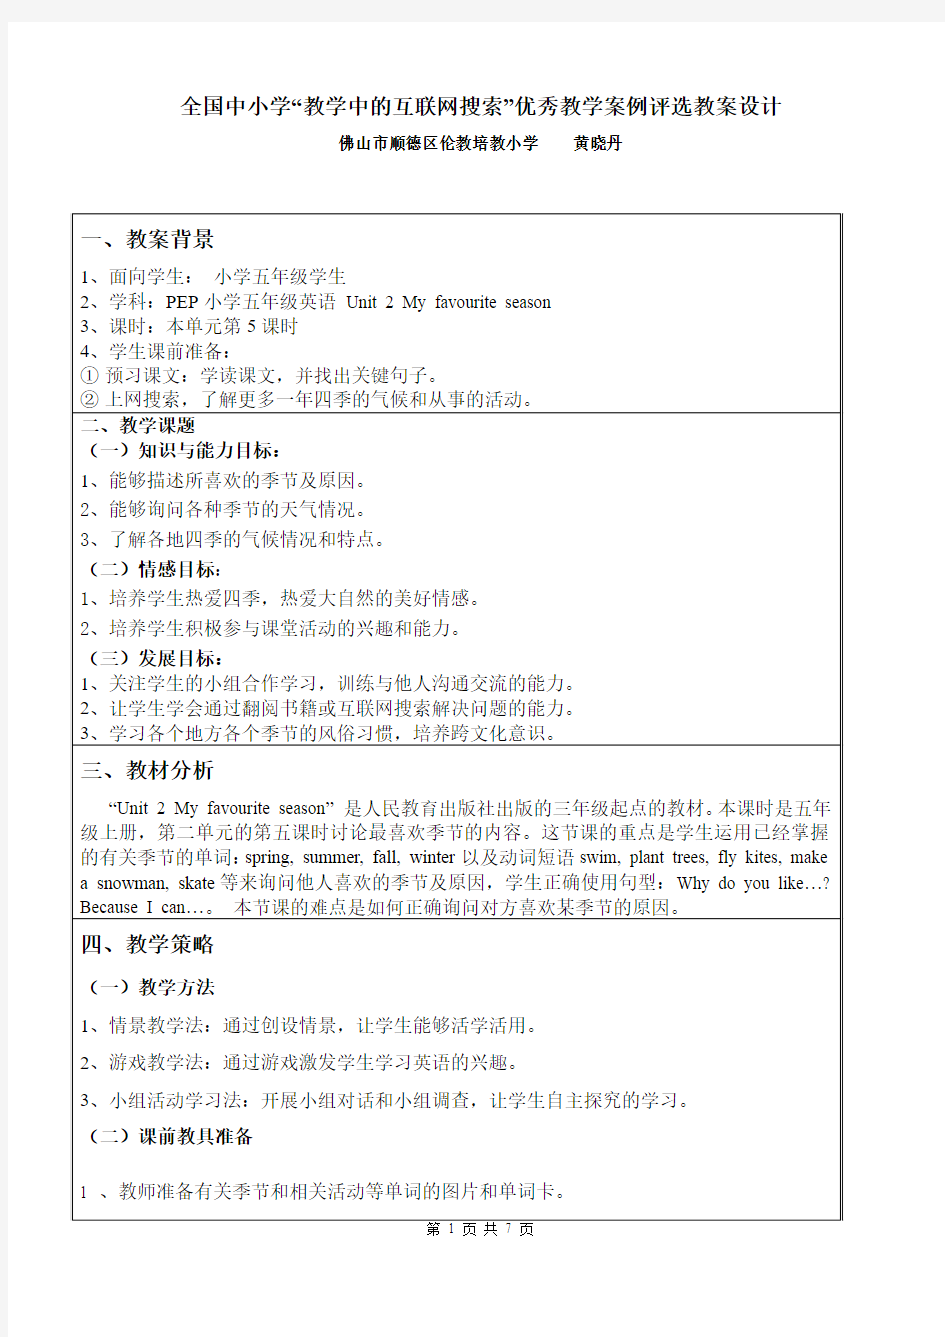 PEP小学五年级英语教案设计(黄晓丹)--“教学中的互联网搜索”优秀教学案例评选_教案设计